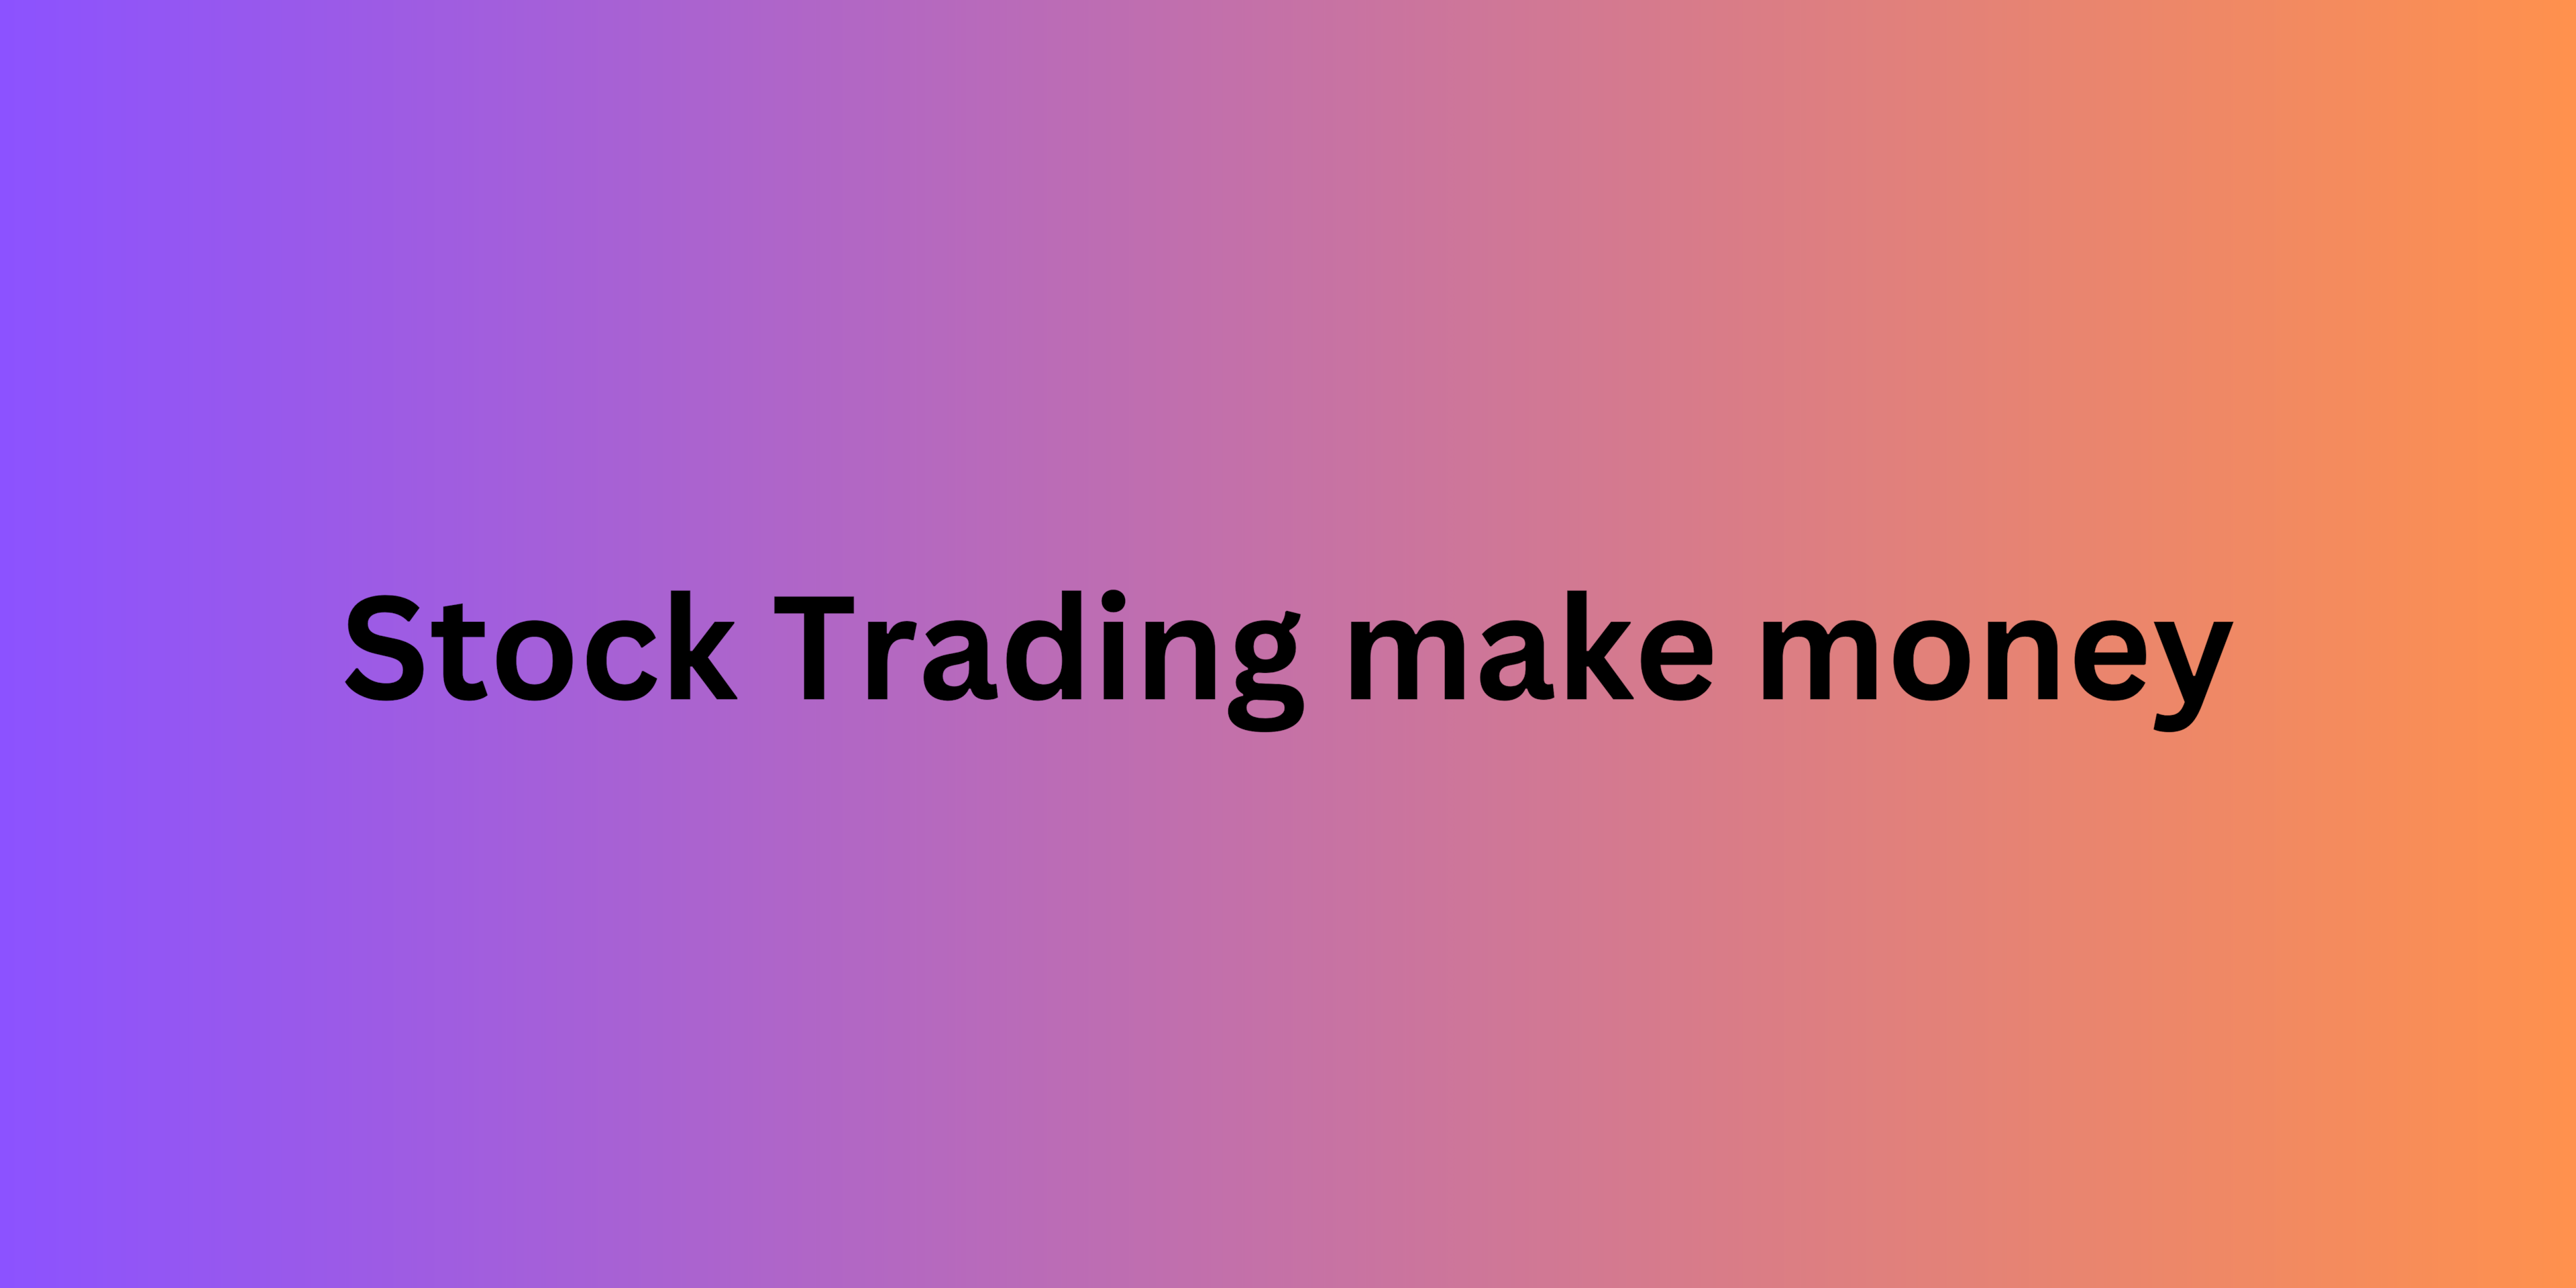 Stock Trading make money